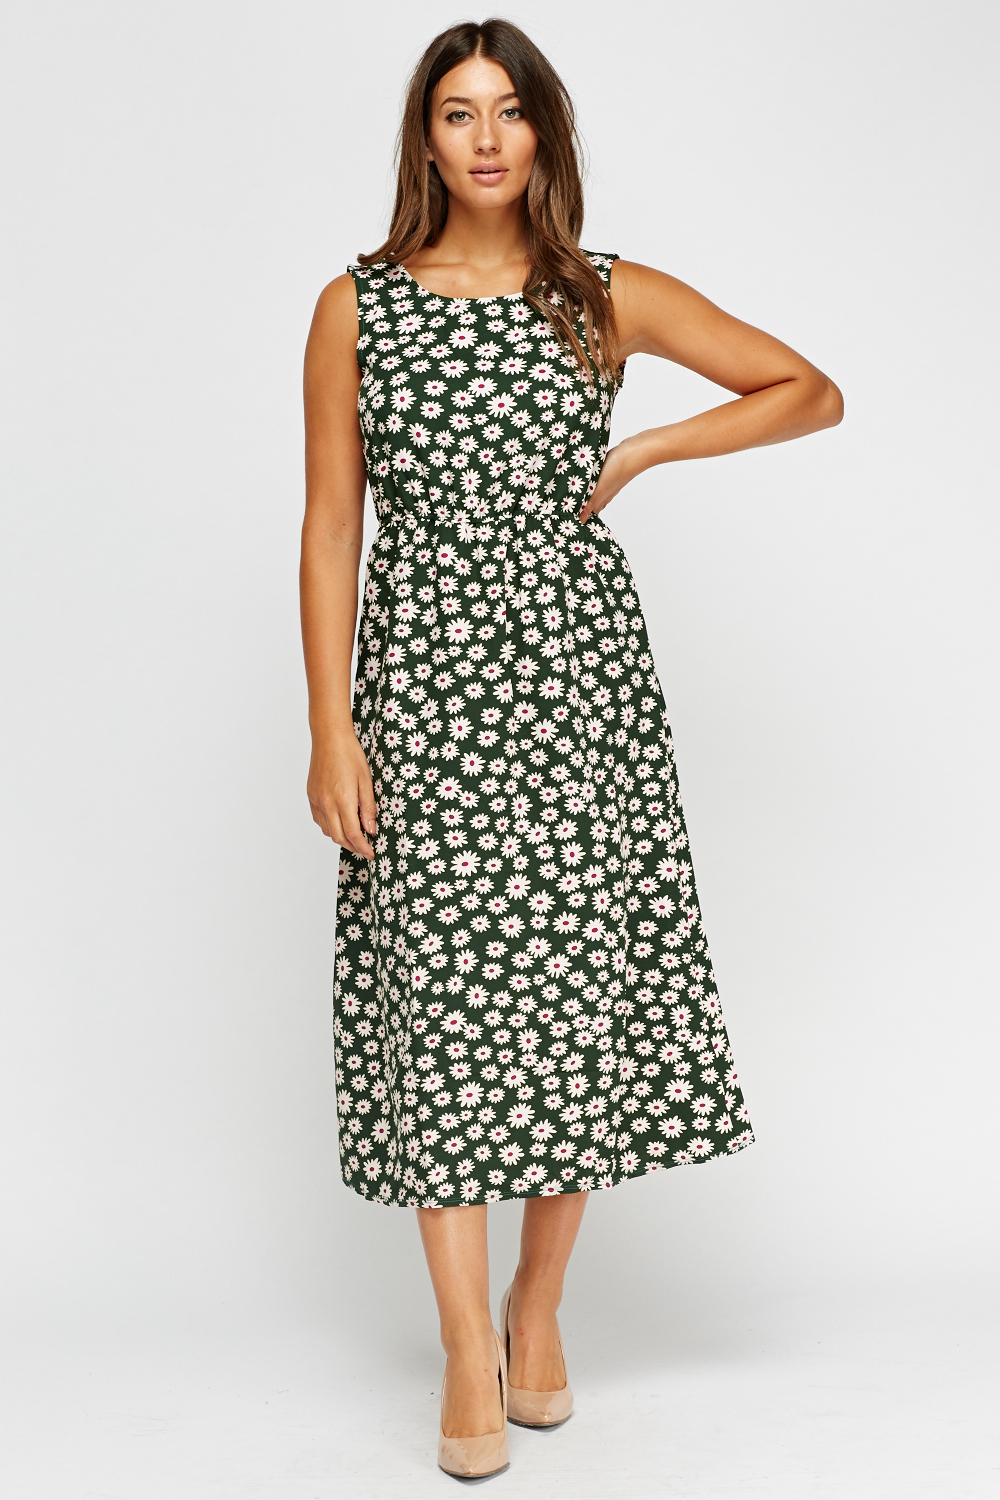 Green Floral Midi Dress - Just $6